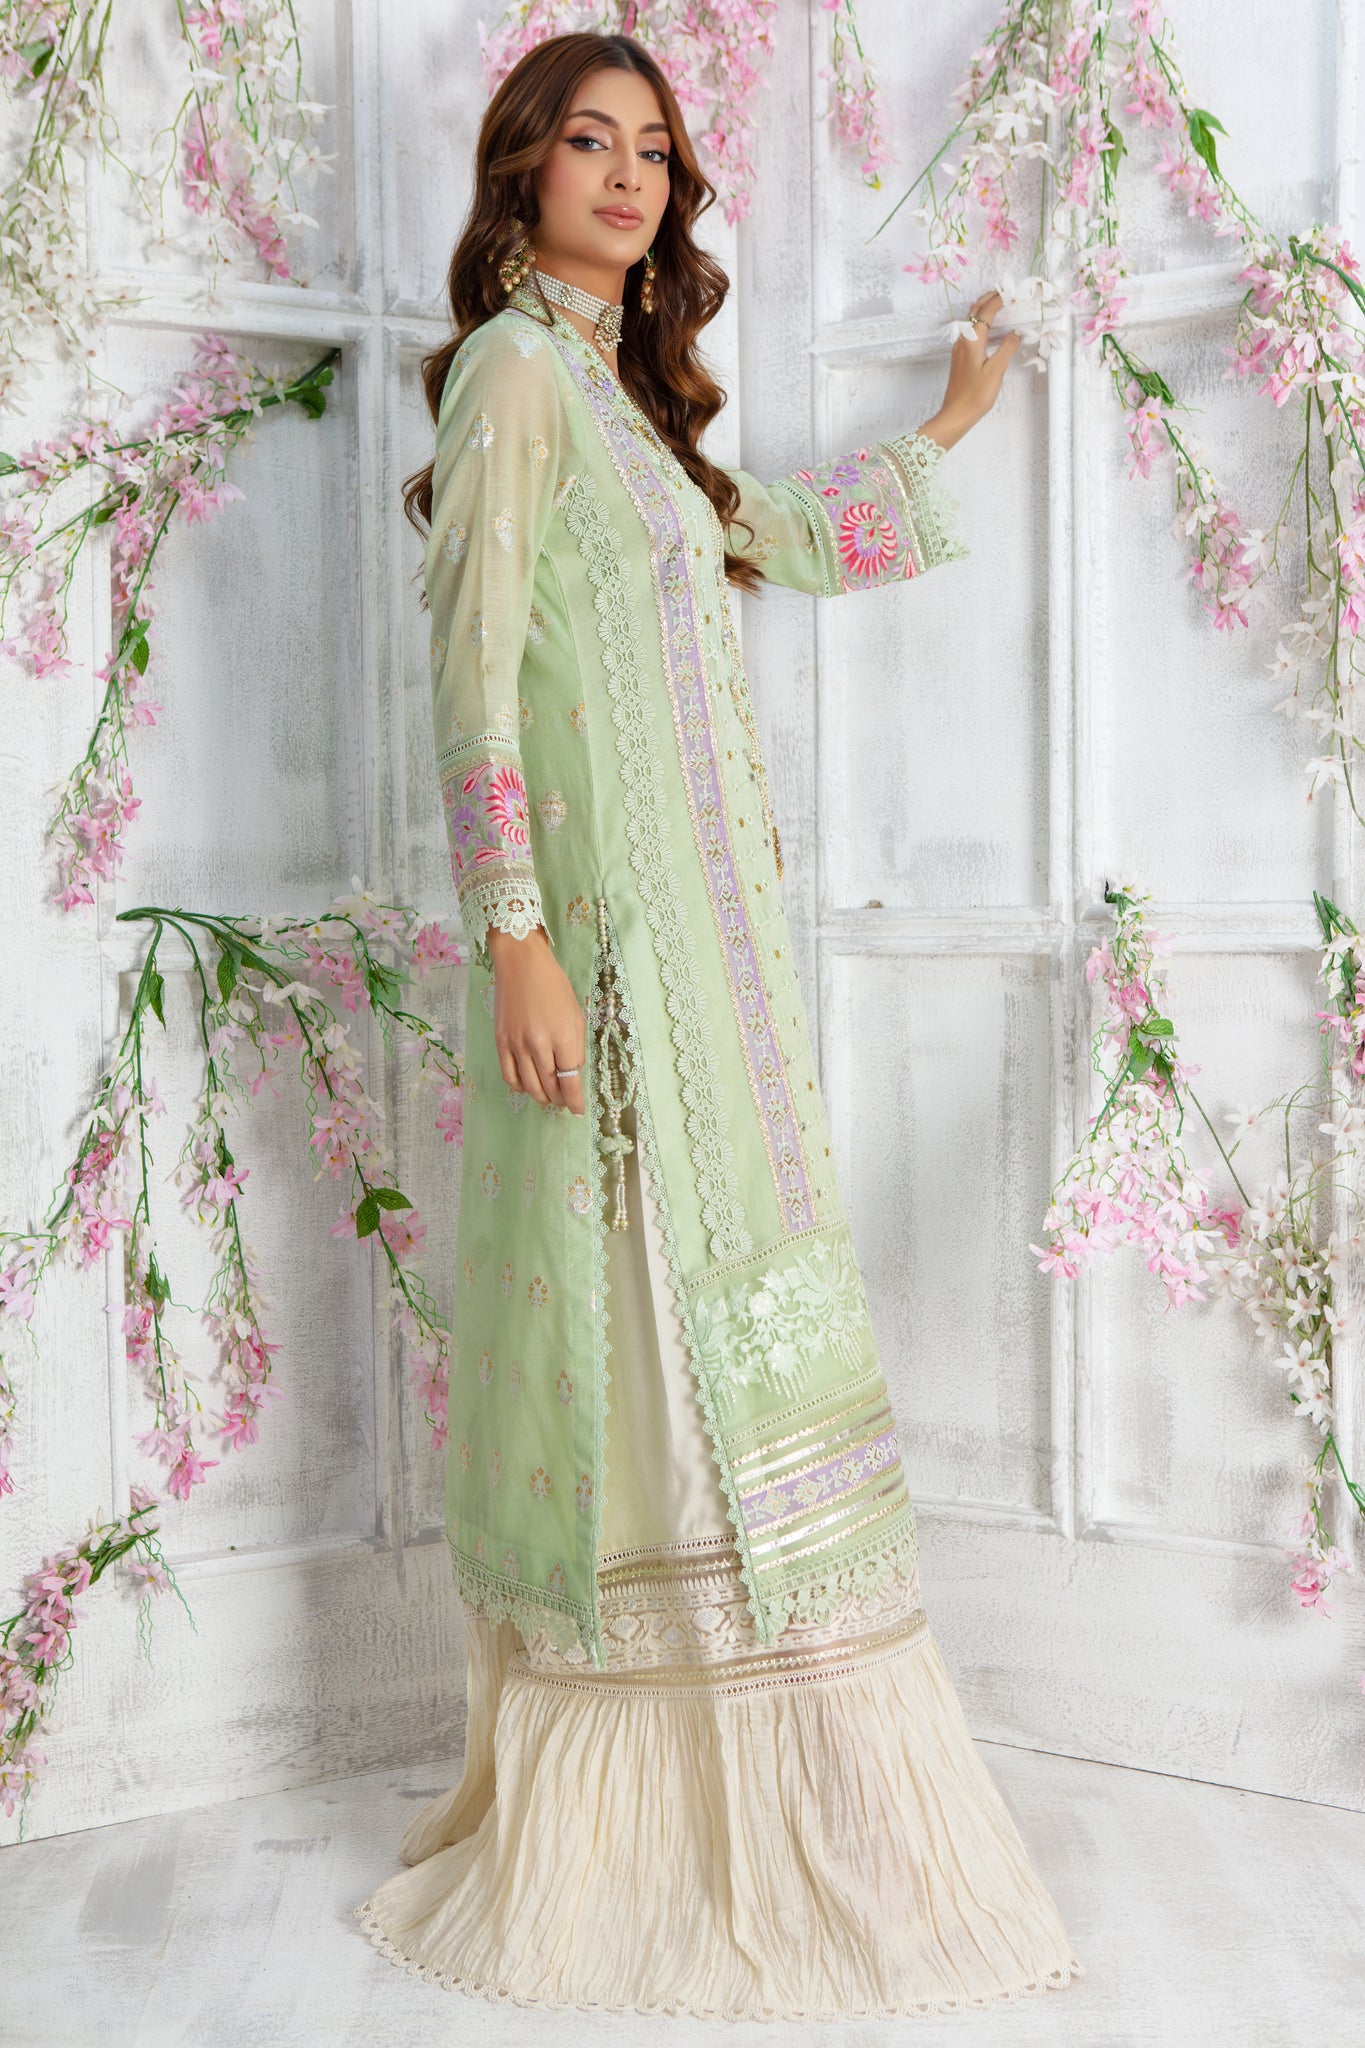 Margarita | Pakistani Designer Outfit | Sarosh Salman